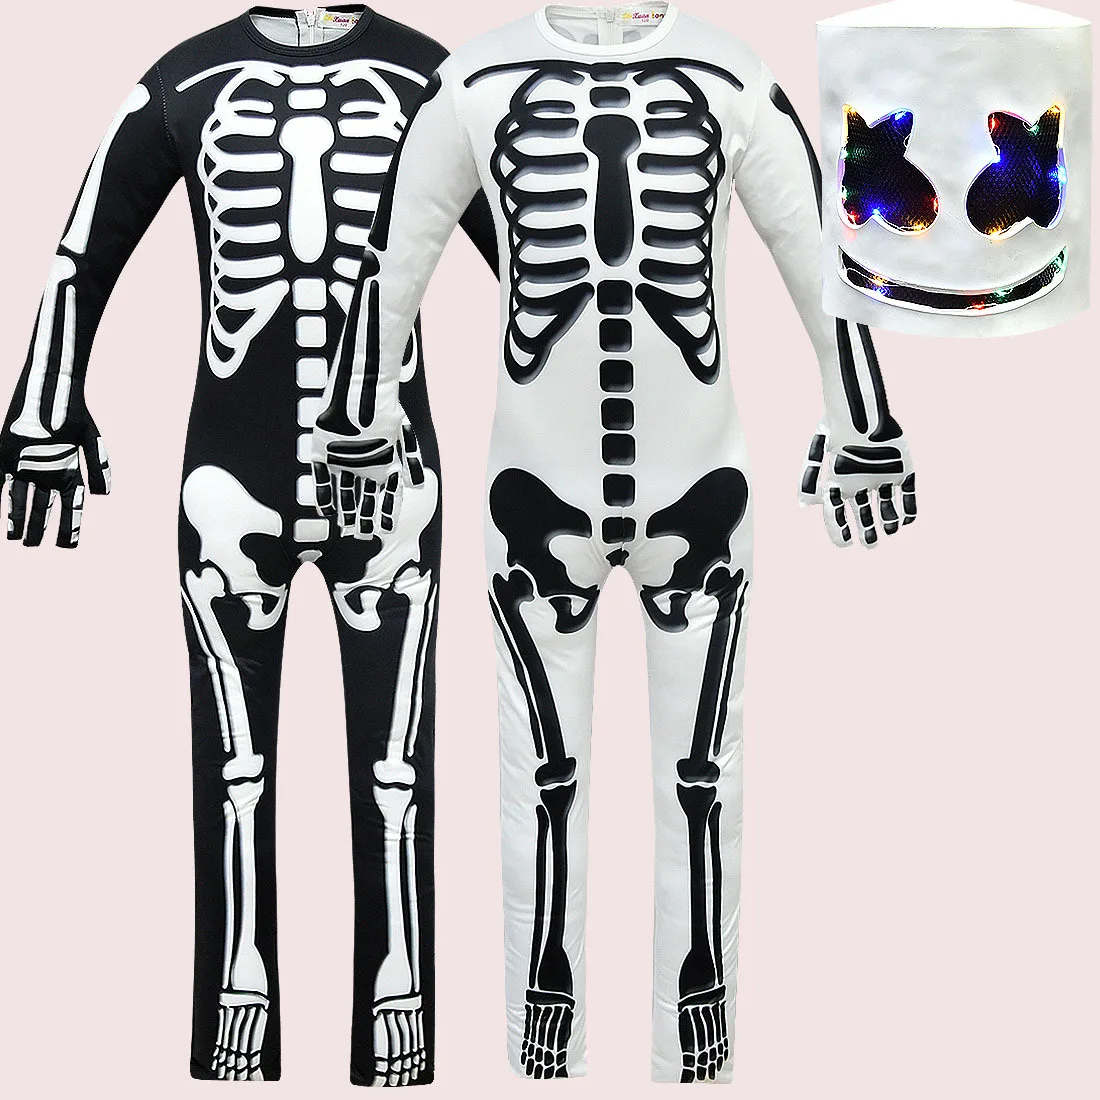 Карнавальная одежда на Хэллоуин для детей, костюм, маска диджея, скелет, косплей, музыкальные фанаты, электронный слог, комбинезон, светящаяся маска